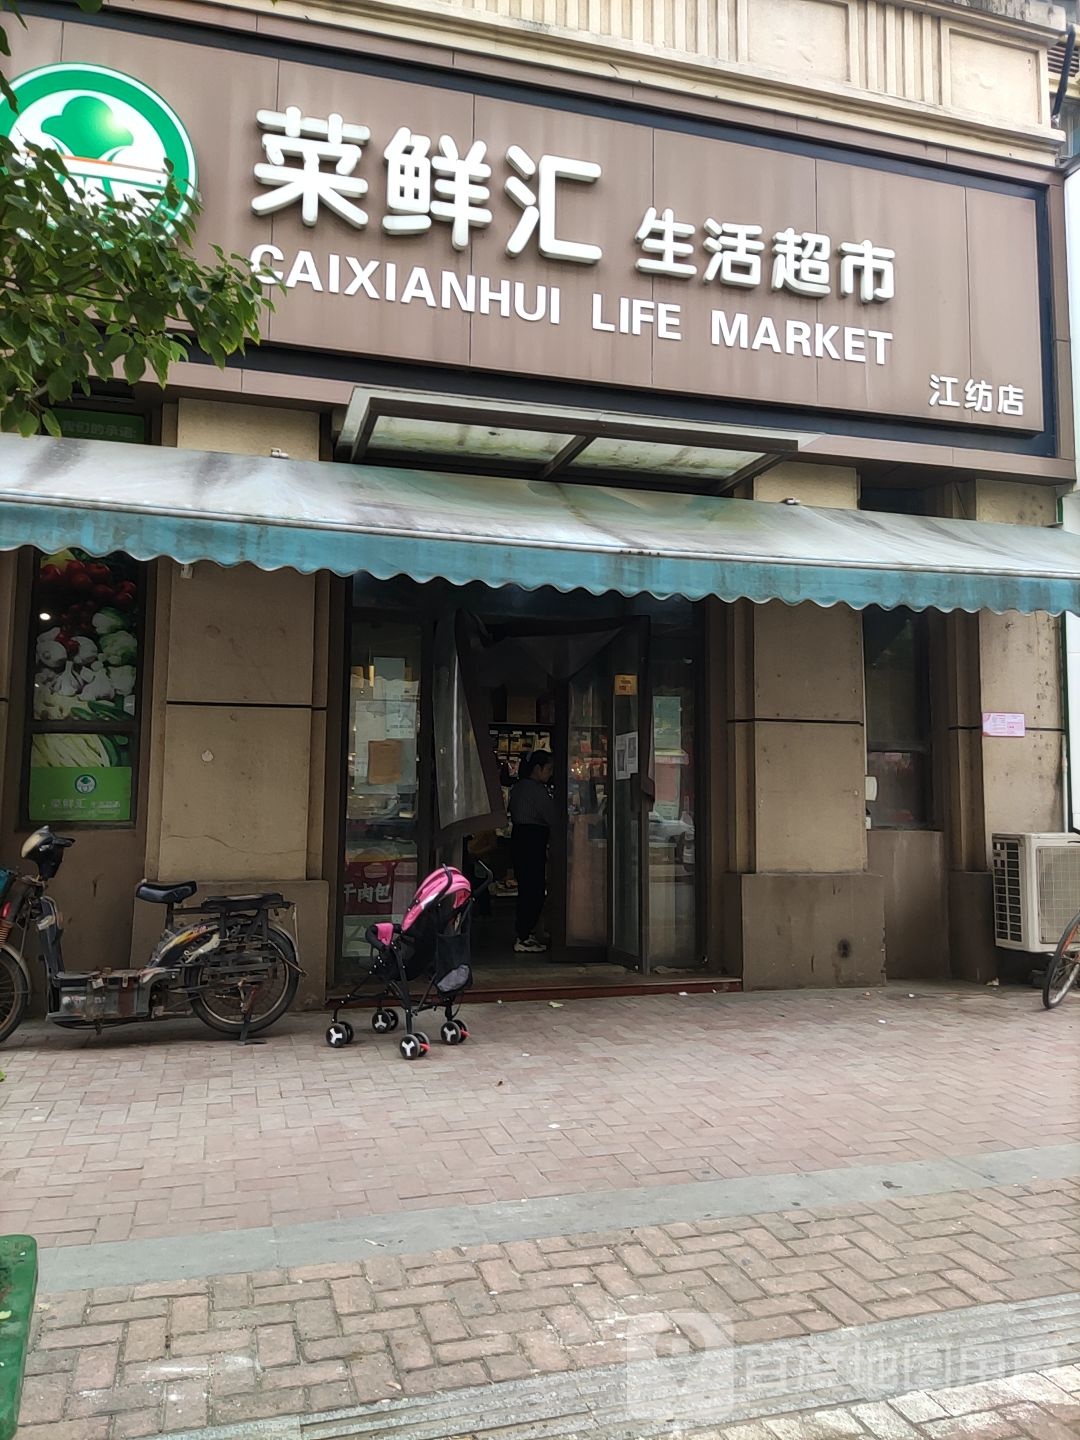 菜鲜汇生活超市(江纺店)